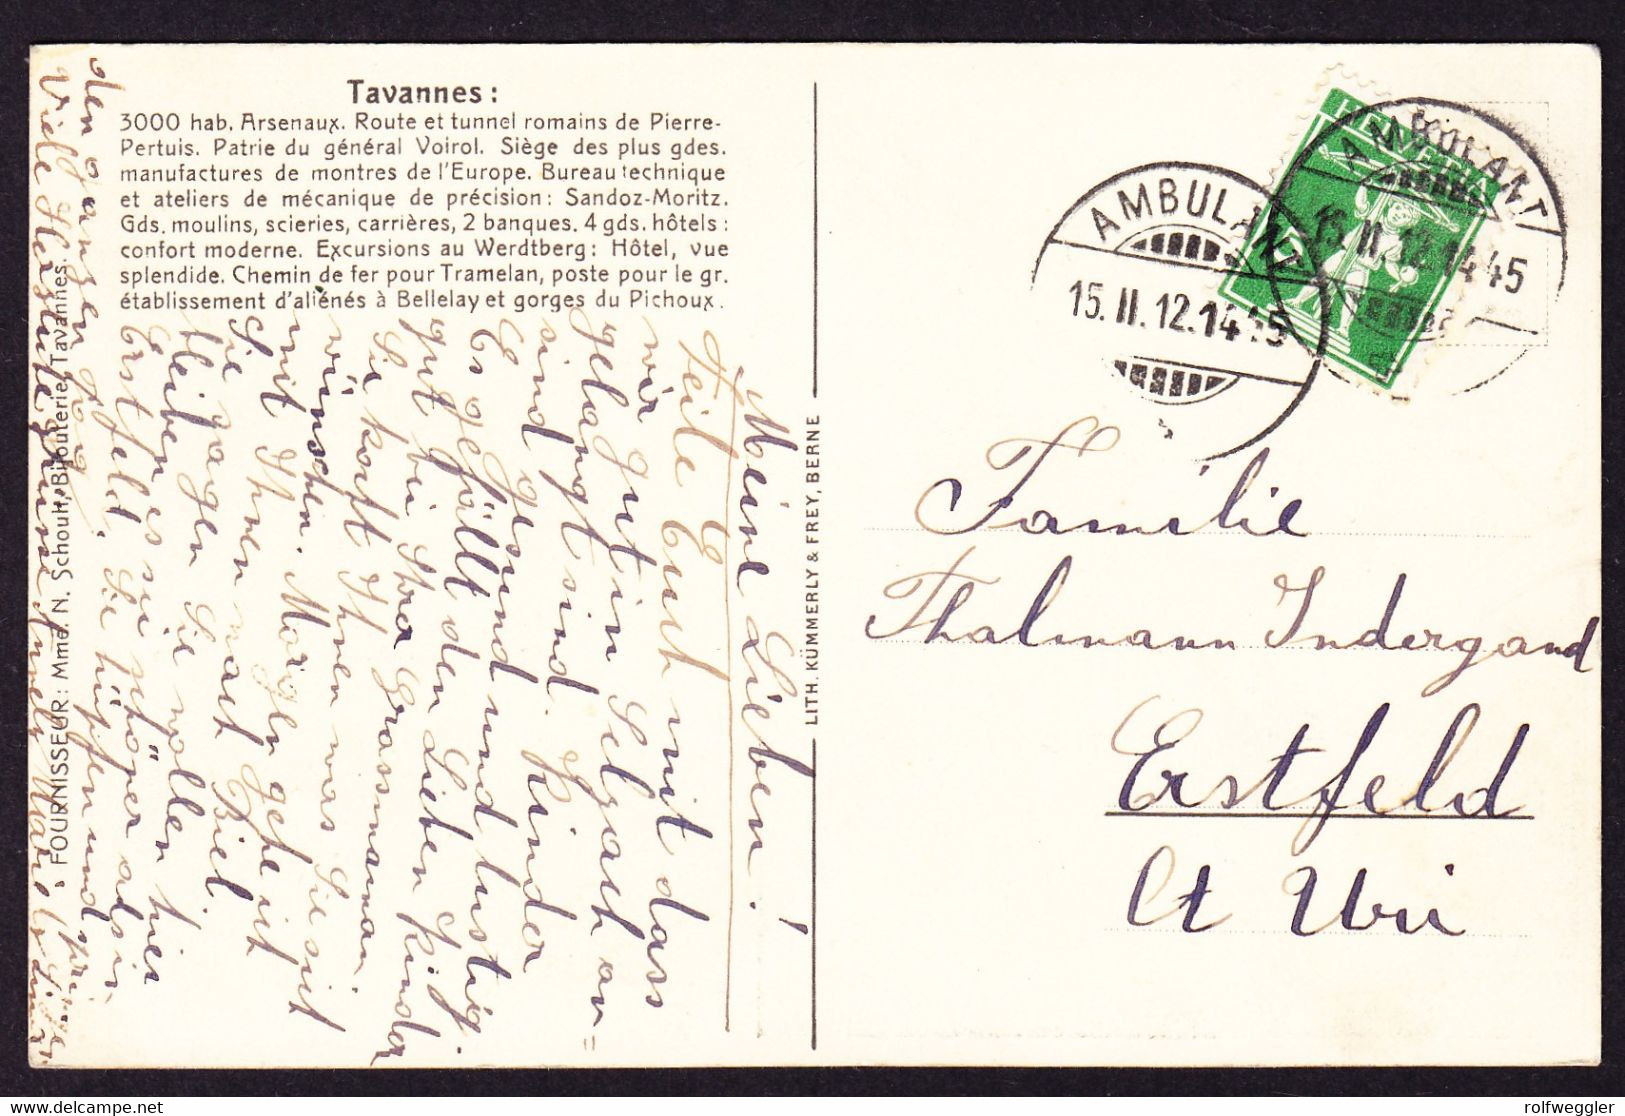 1912 Gelaufene AK: Landkarte, Tavannes Mit Arsenaux. Bahnstempel. - Tavannes